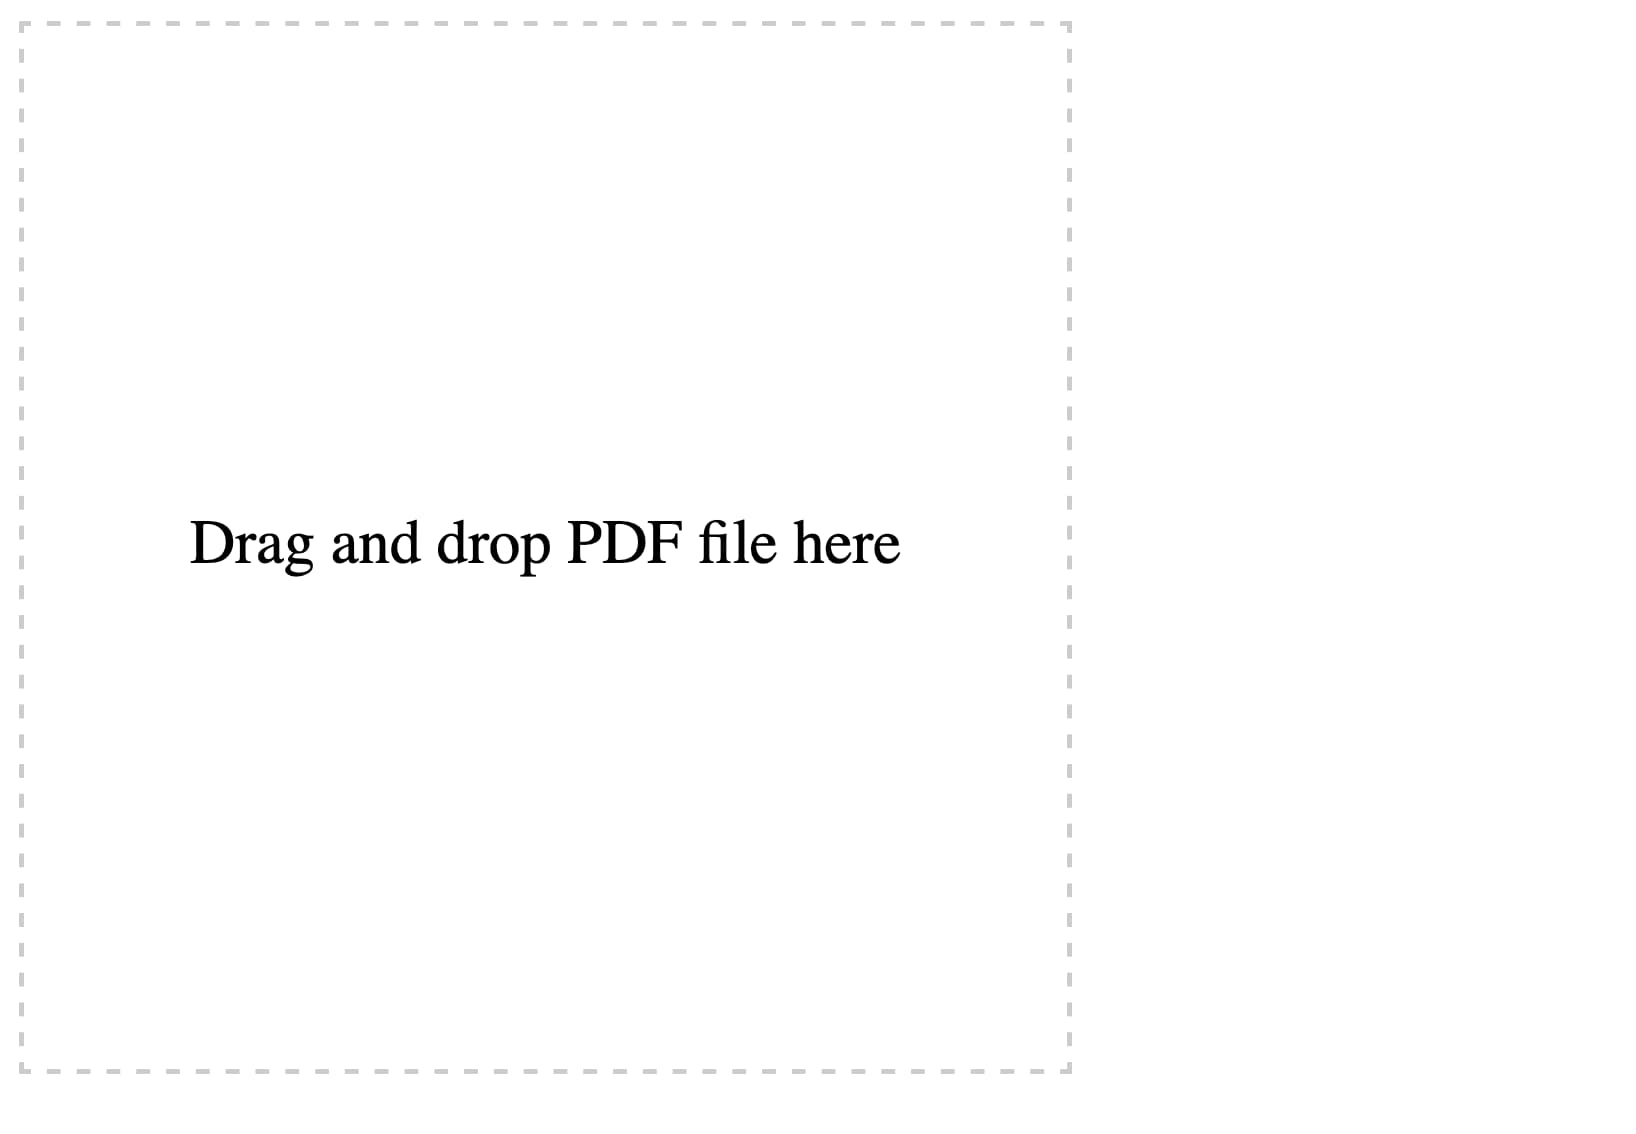 文本周围有一个方形虚线边框，显示拖放PDF文件到此处